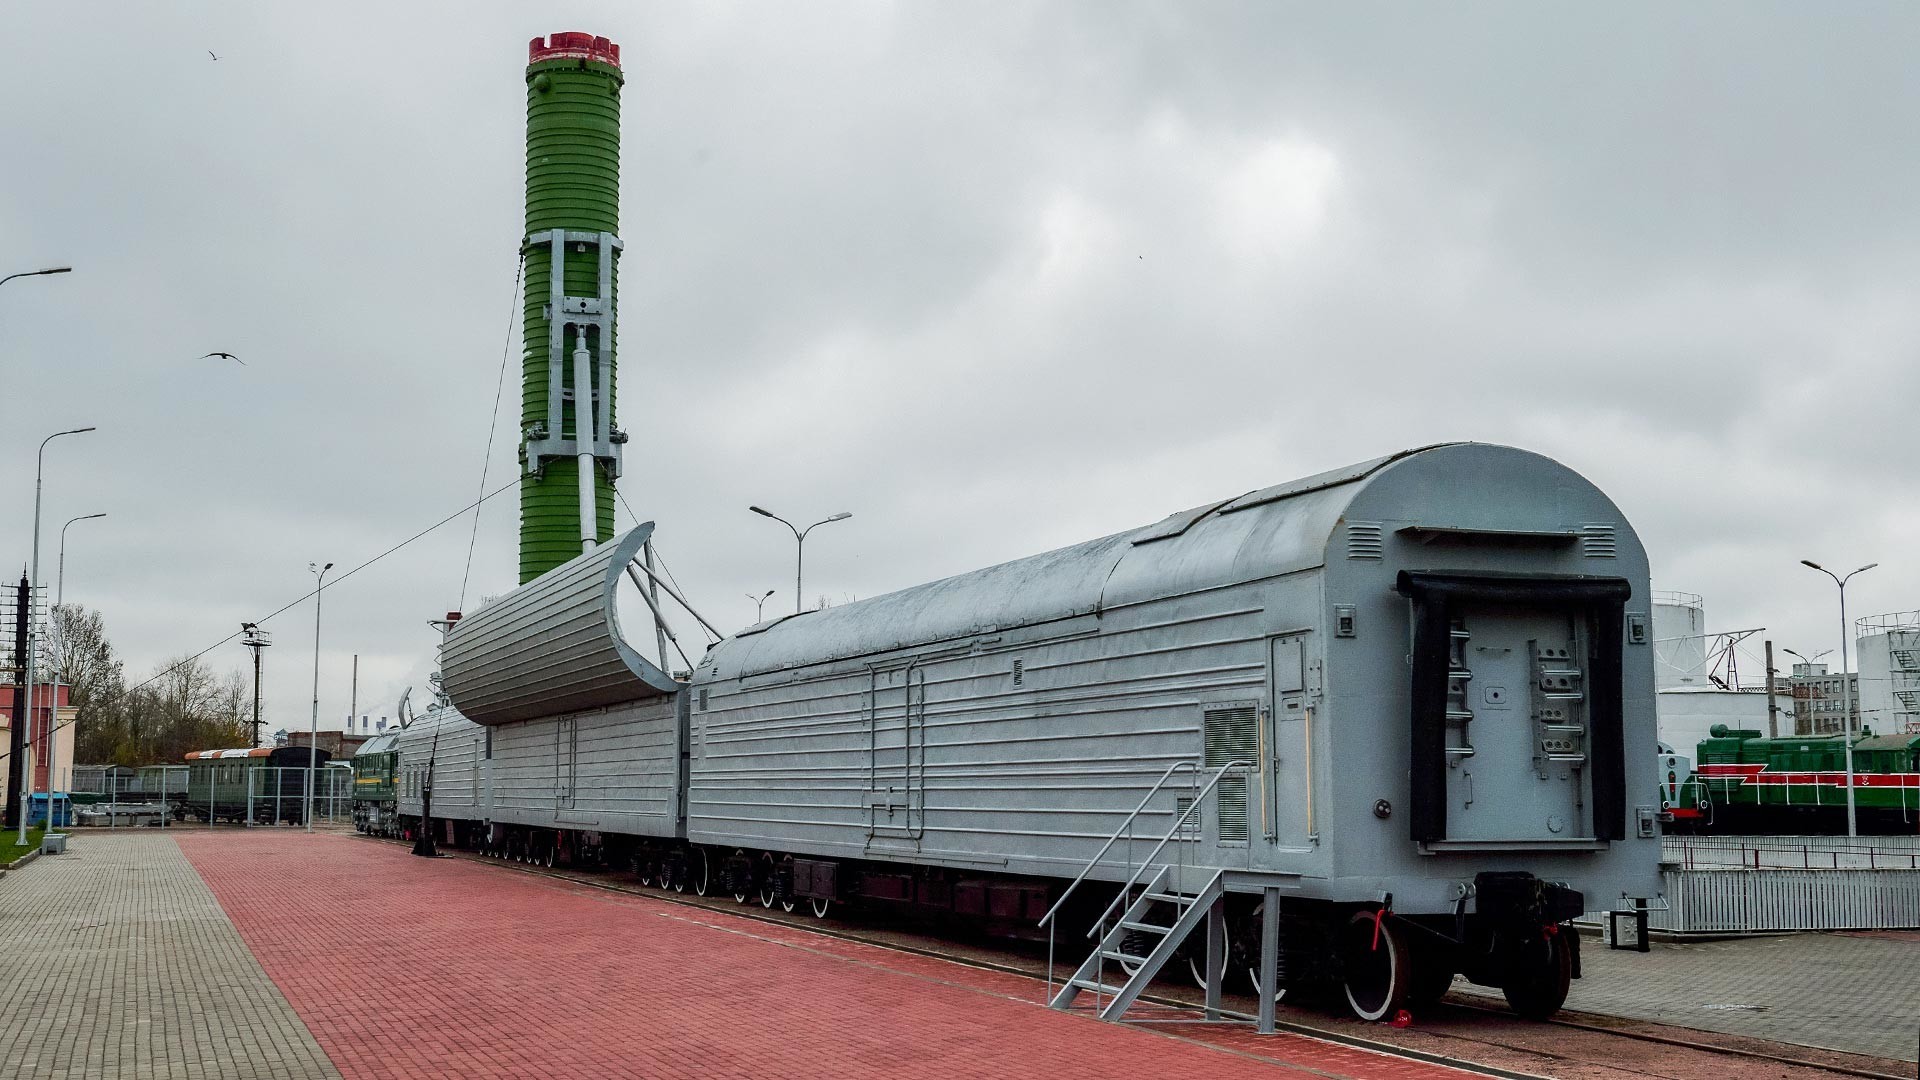 Bojni železniški raketni sistem (BŽRK) Molodjec, razstavljen v Muzeju ruskih železnic na prostem blizu Sankt Peterburga